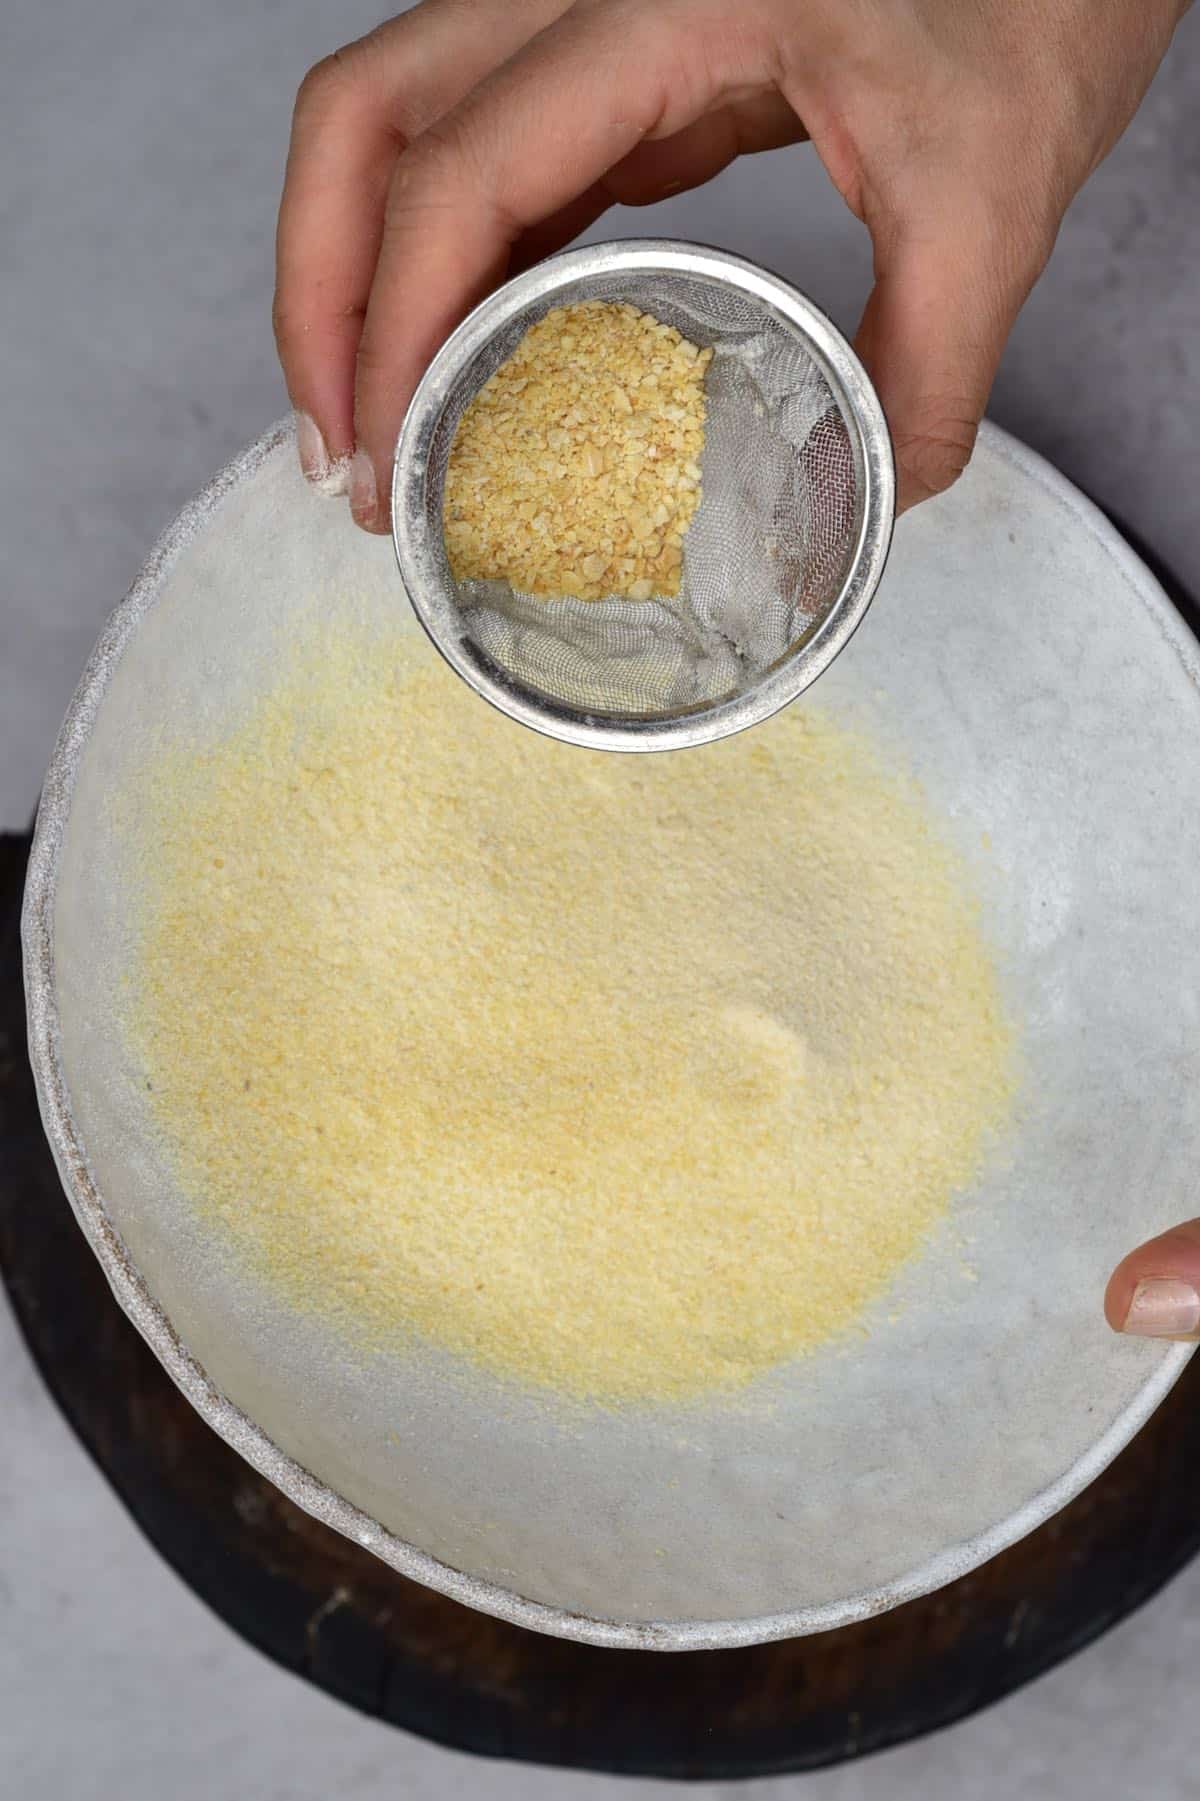 Sieving dried garlic powder